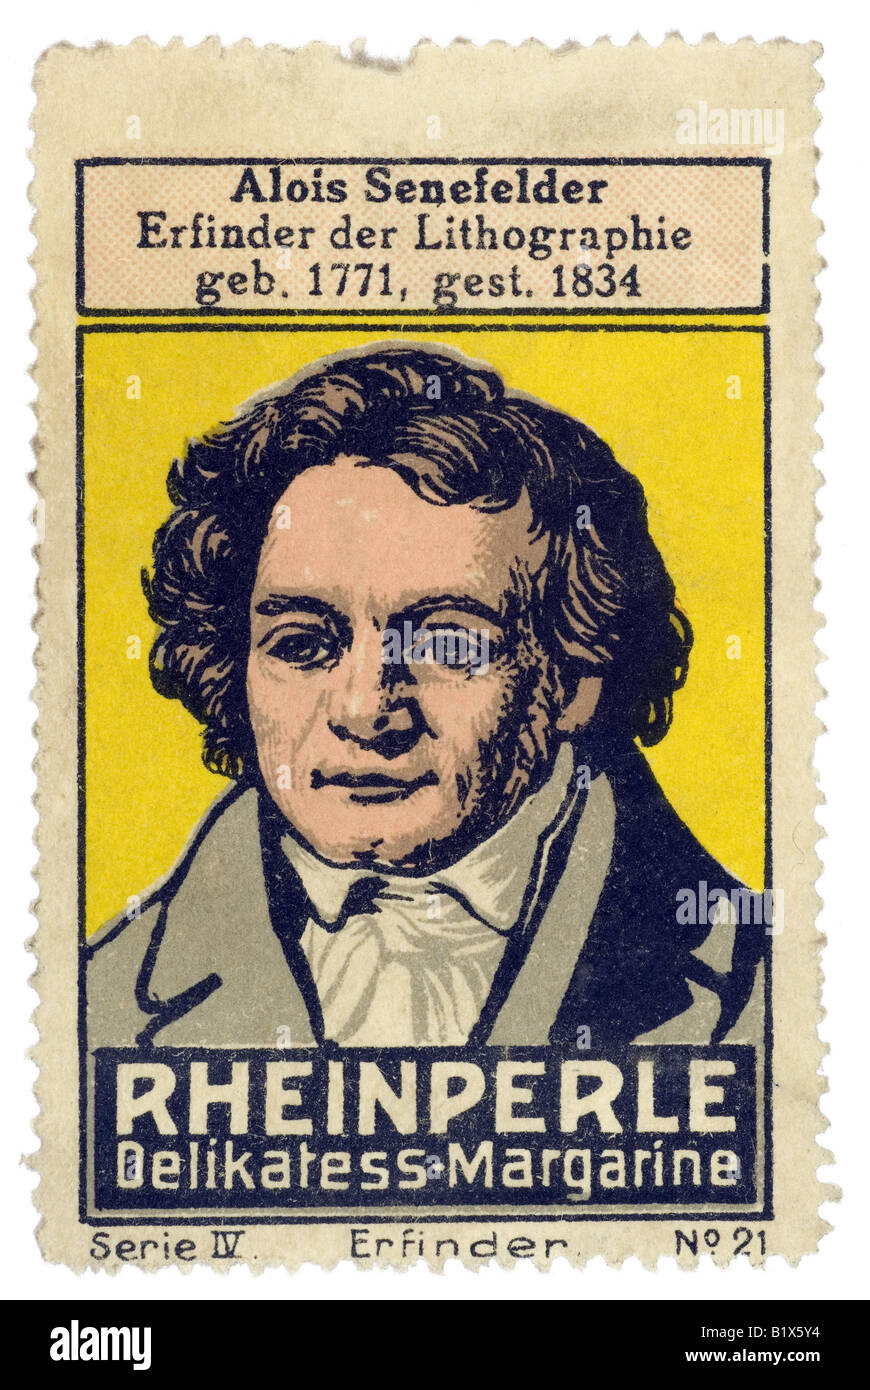 trading stamp margarine Alois Senefelder Erfinder der Lithographie geb 1771 in Hagerston gest 1834 Reinperle Delikatess Margarin Stock Photo